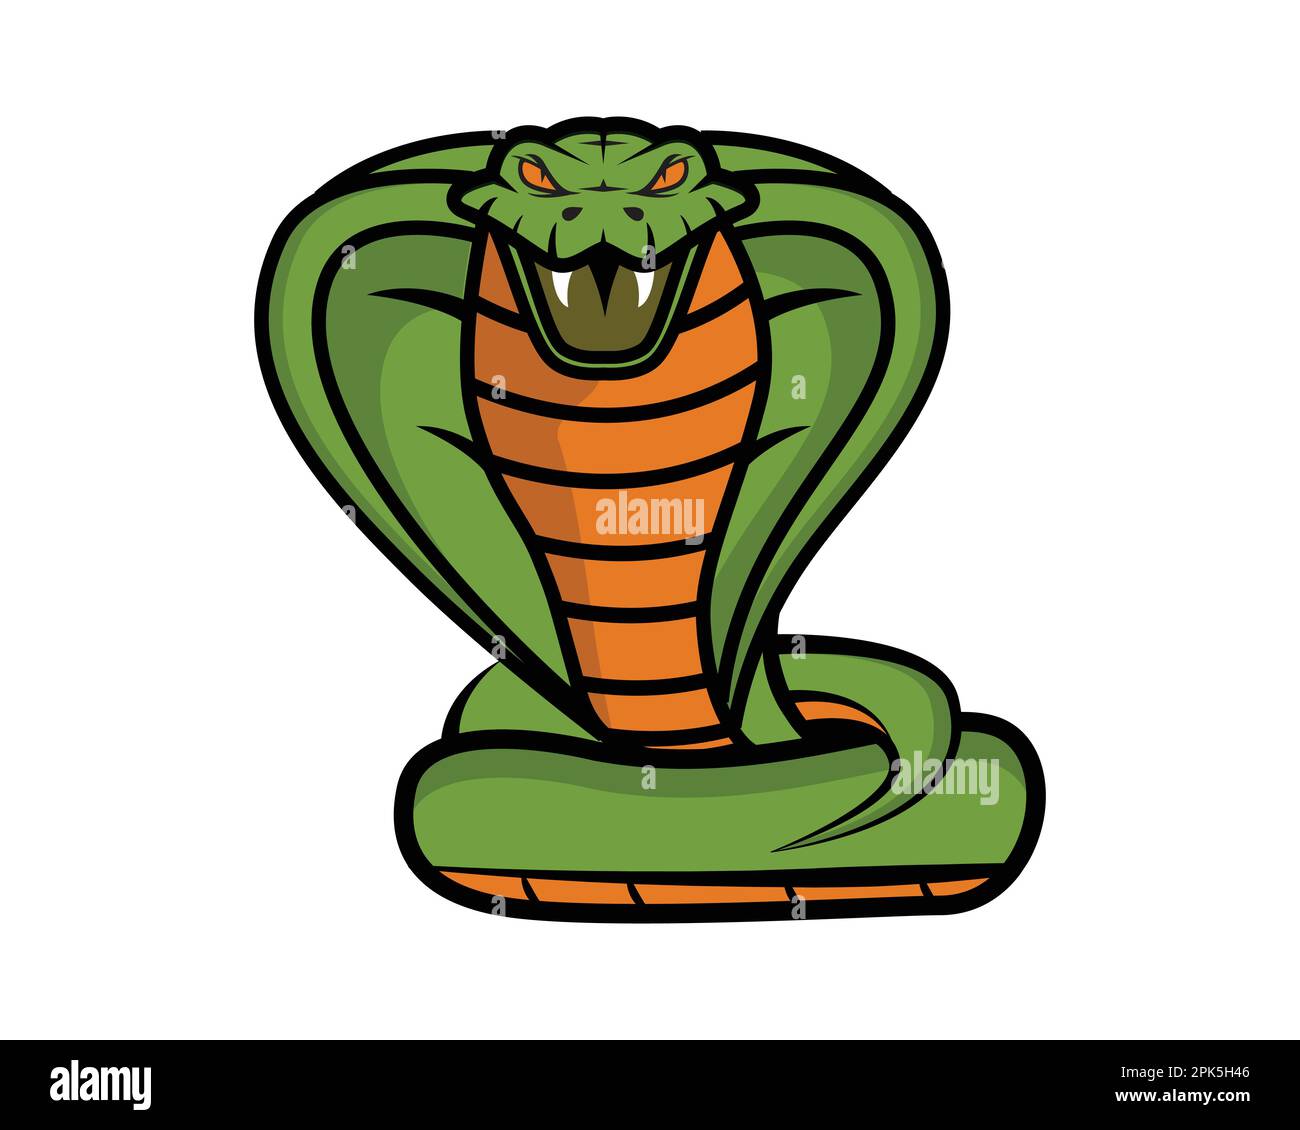 Vue de face de la Snake verte visualisée avec une illustration simple Illustration de Vecteur